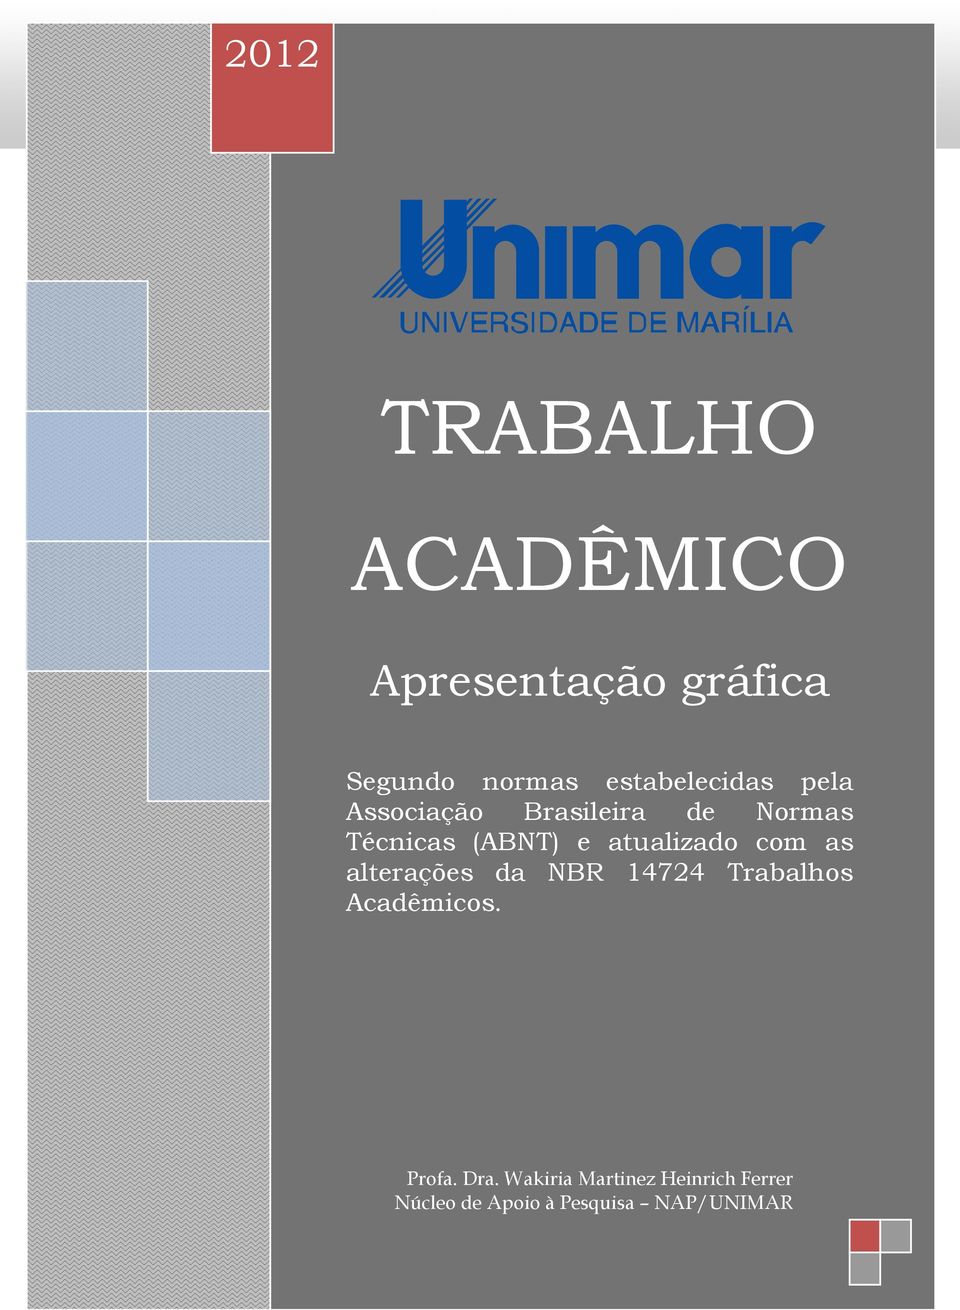 estabelecidas pela Associação Brasileira de Normas Técnicas (ABNT) e atualizado com